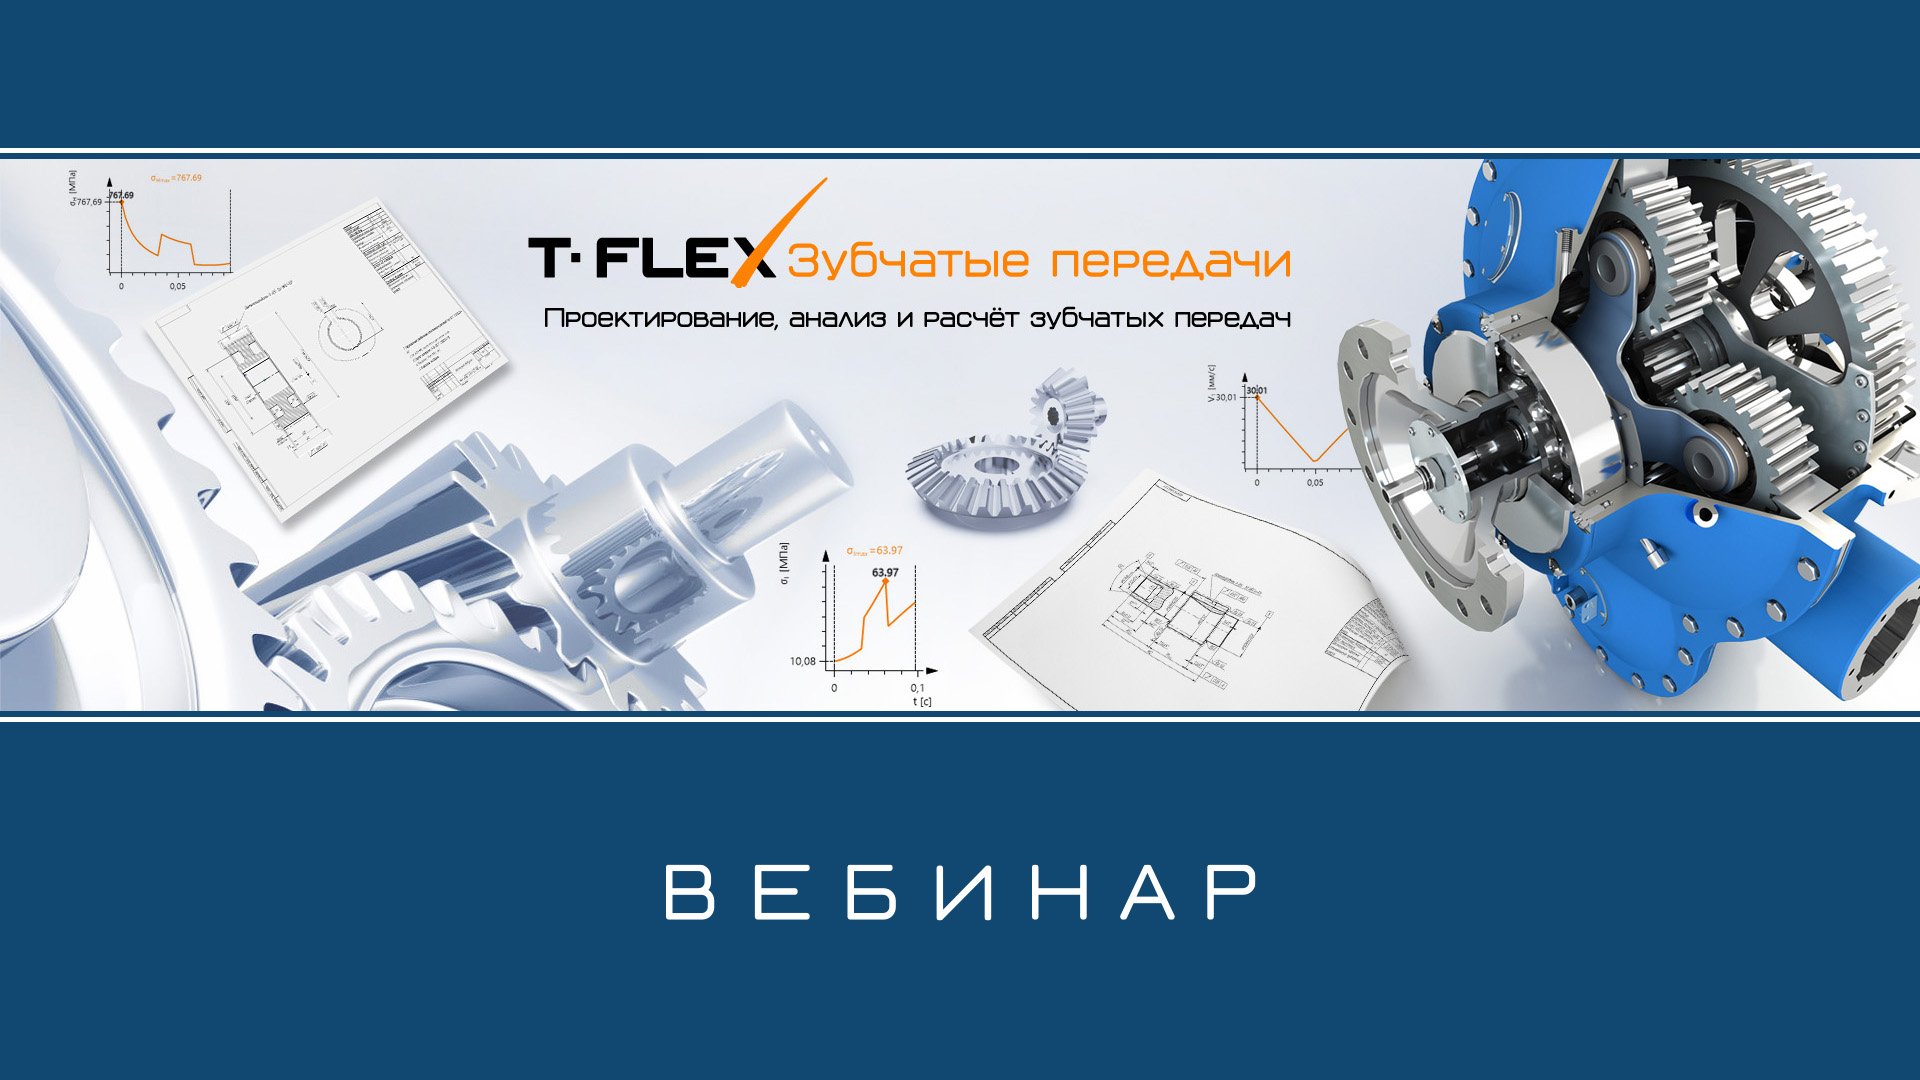 T-FLEX Зубчатые передачи – Обзор приложения